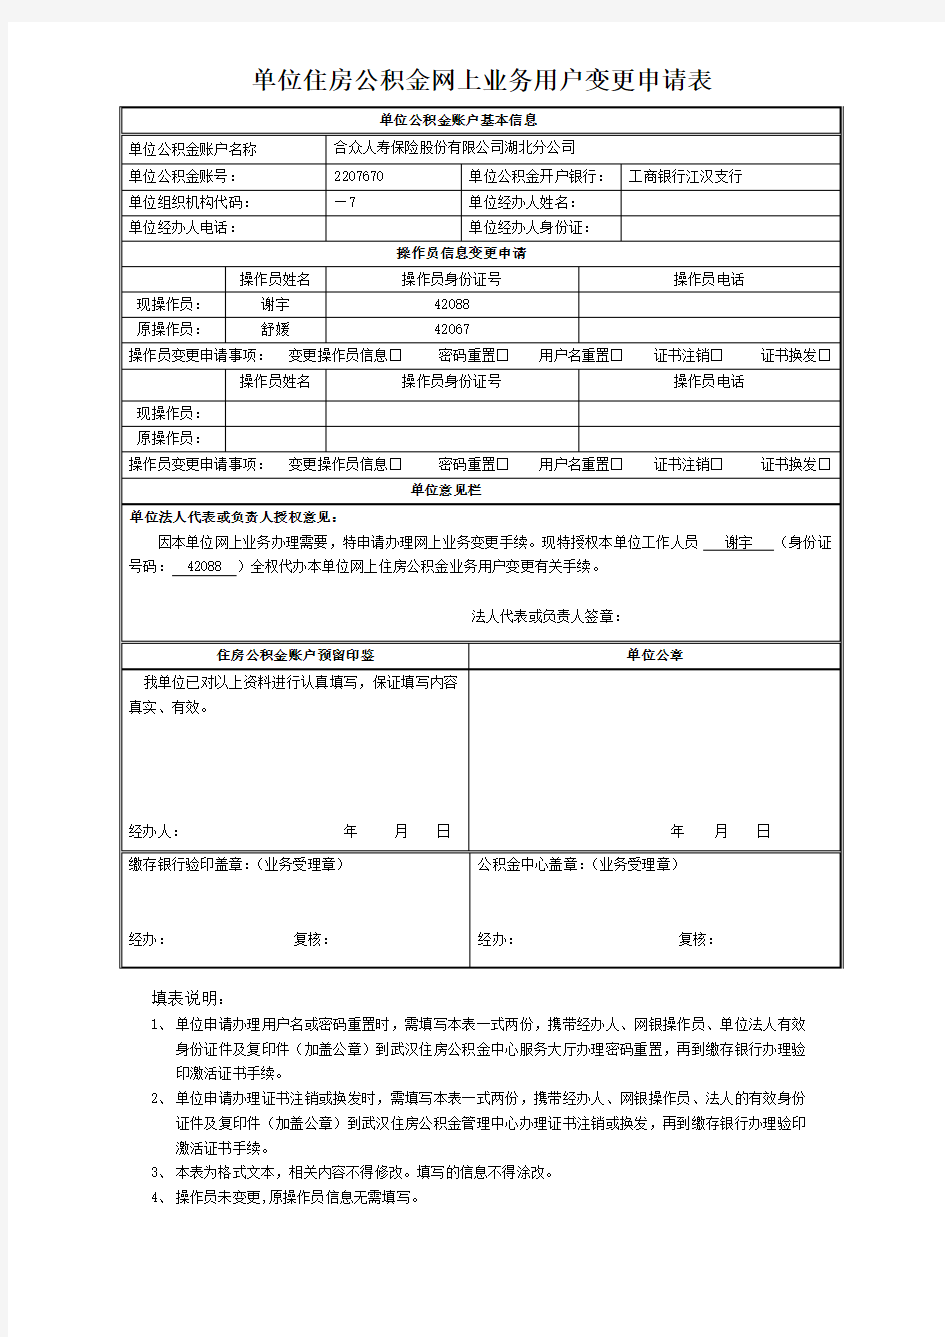 武汉单位住房公积金网上业务用户变更申请表